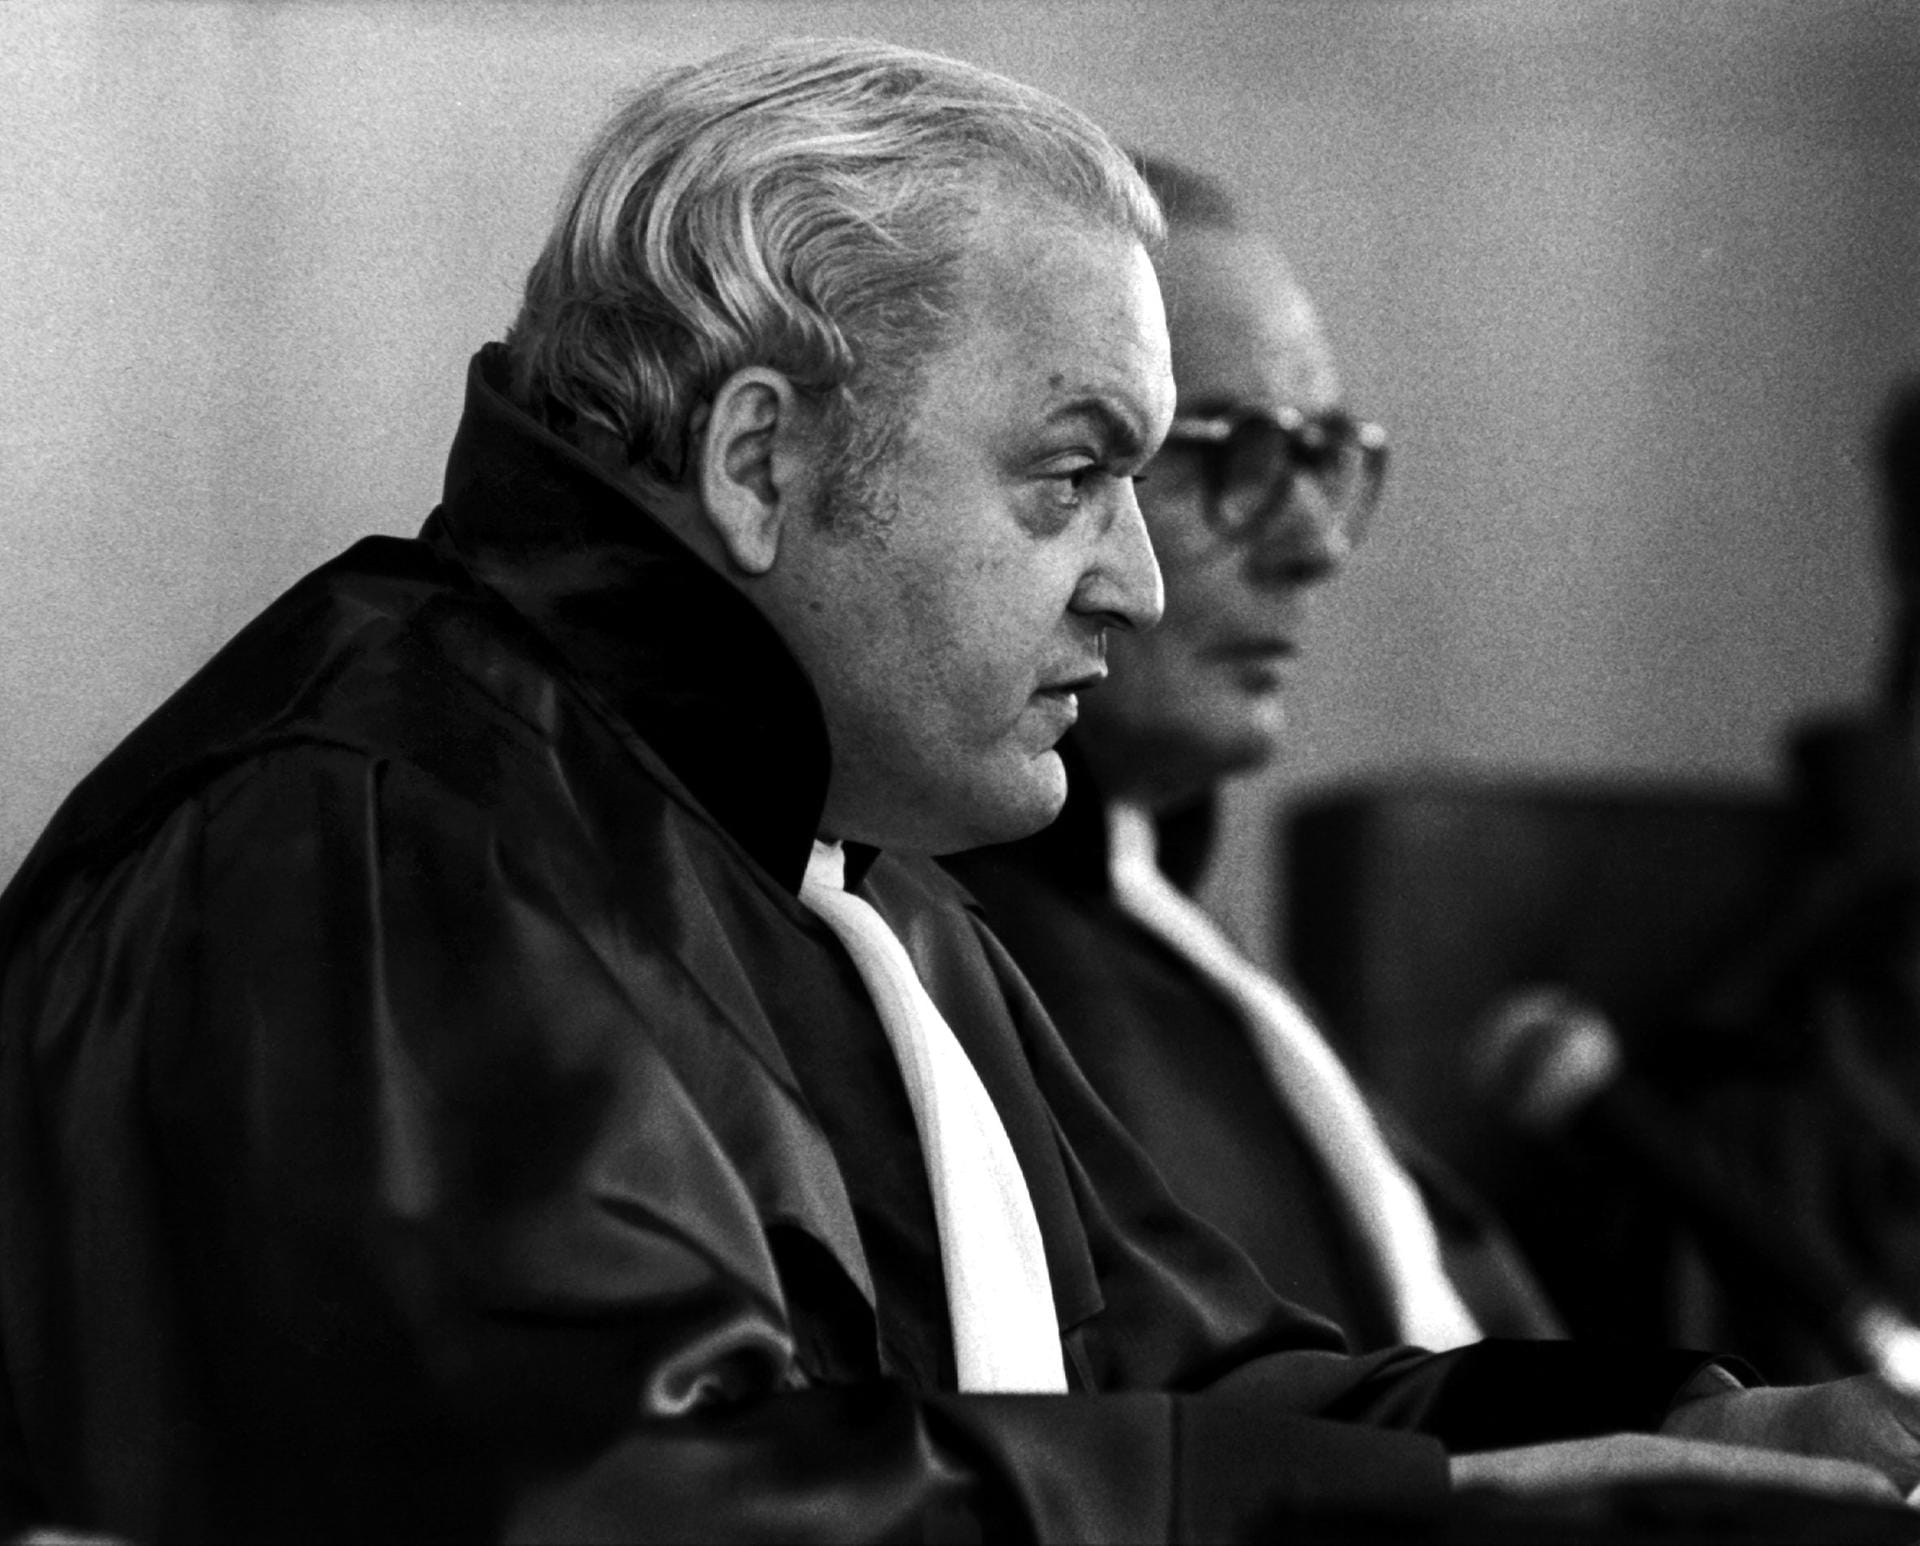 Herzog wurde 1983 Vizepräsident des Bundesverfassungsgerichts.